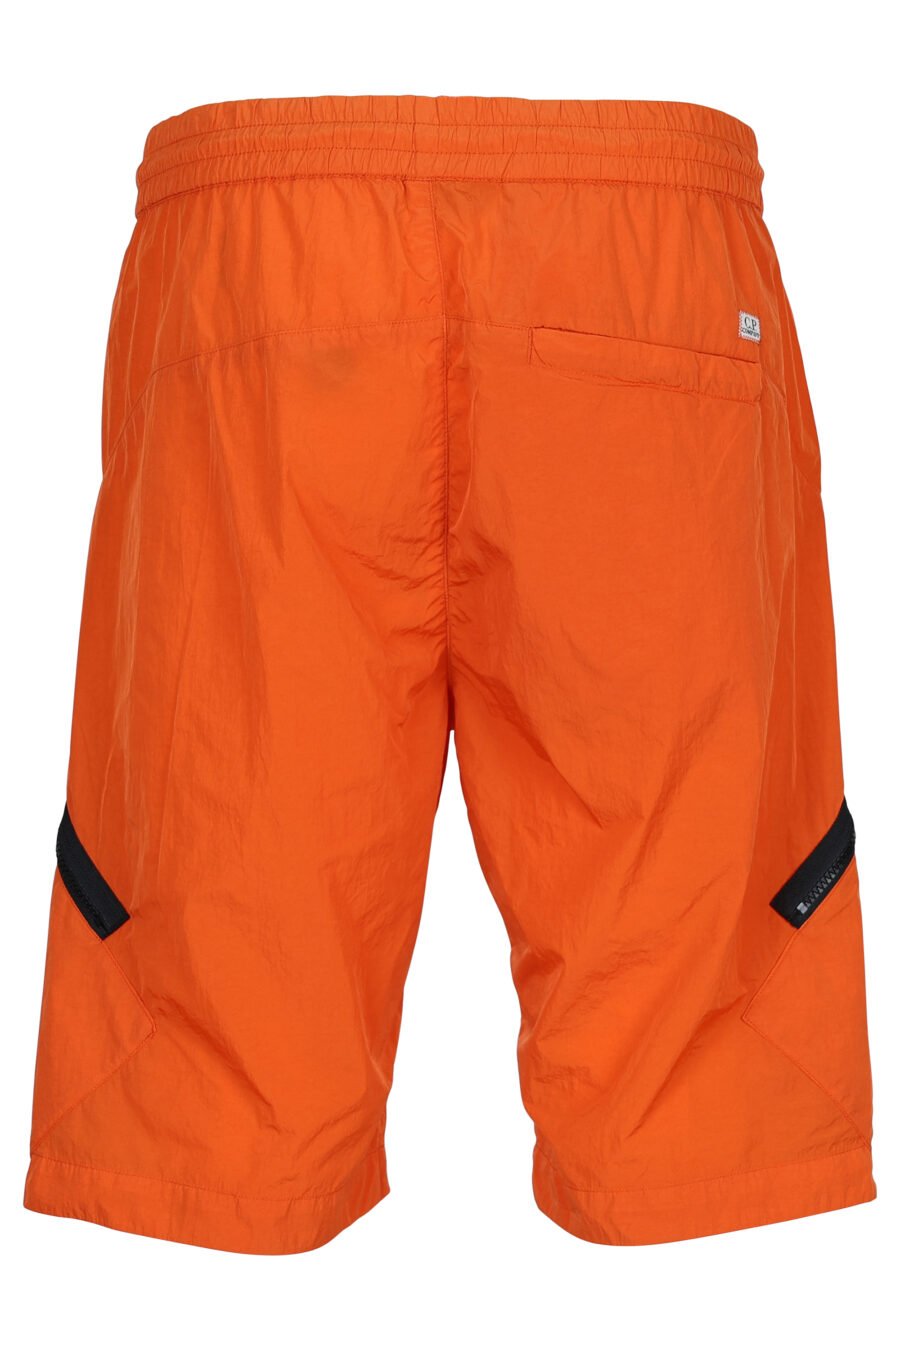 Orangefarbene Shorts mit diagonalem Reißverschluss und Linsenlogo - 7620943518290 2